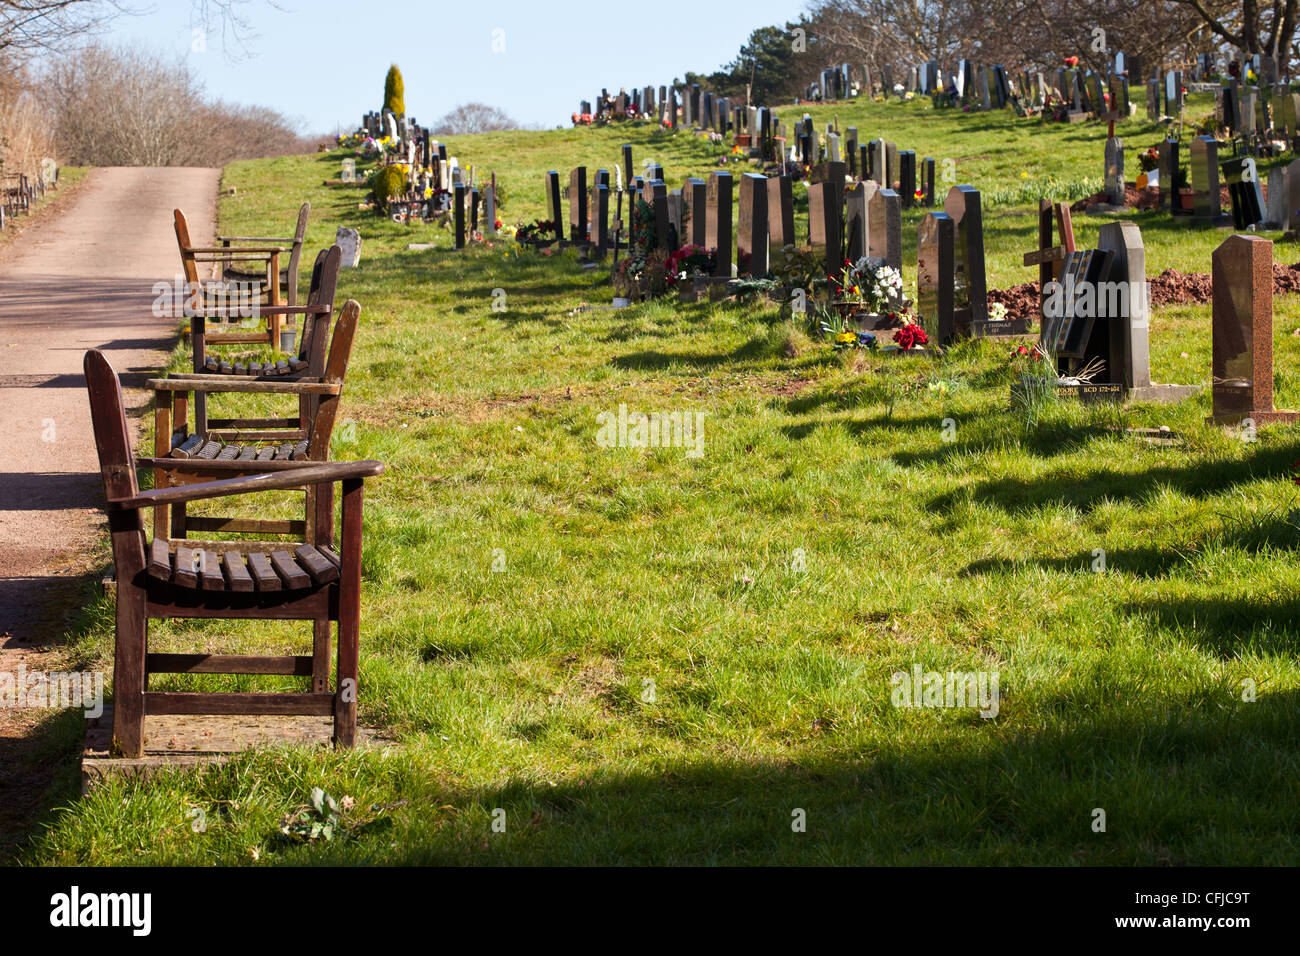 Sitzbank für trauernde am Friedhof sitzen. Stockfoto